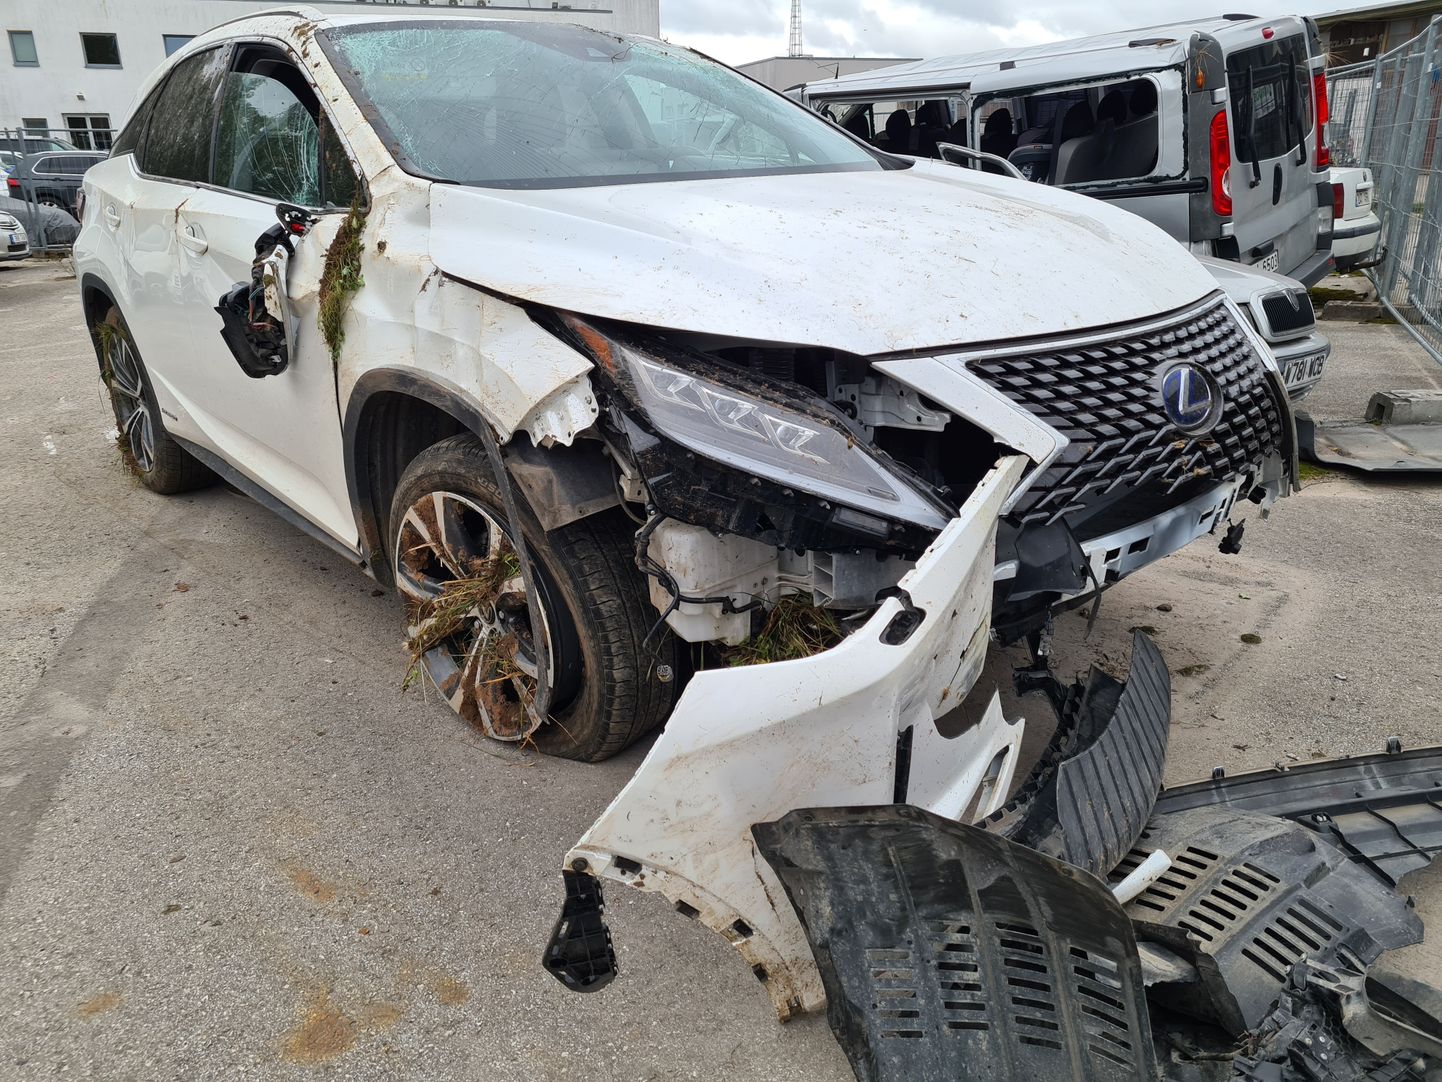 Septembris püüdis üks autovarastest politsei eest põgeneda varastatud Lexusega.